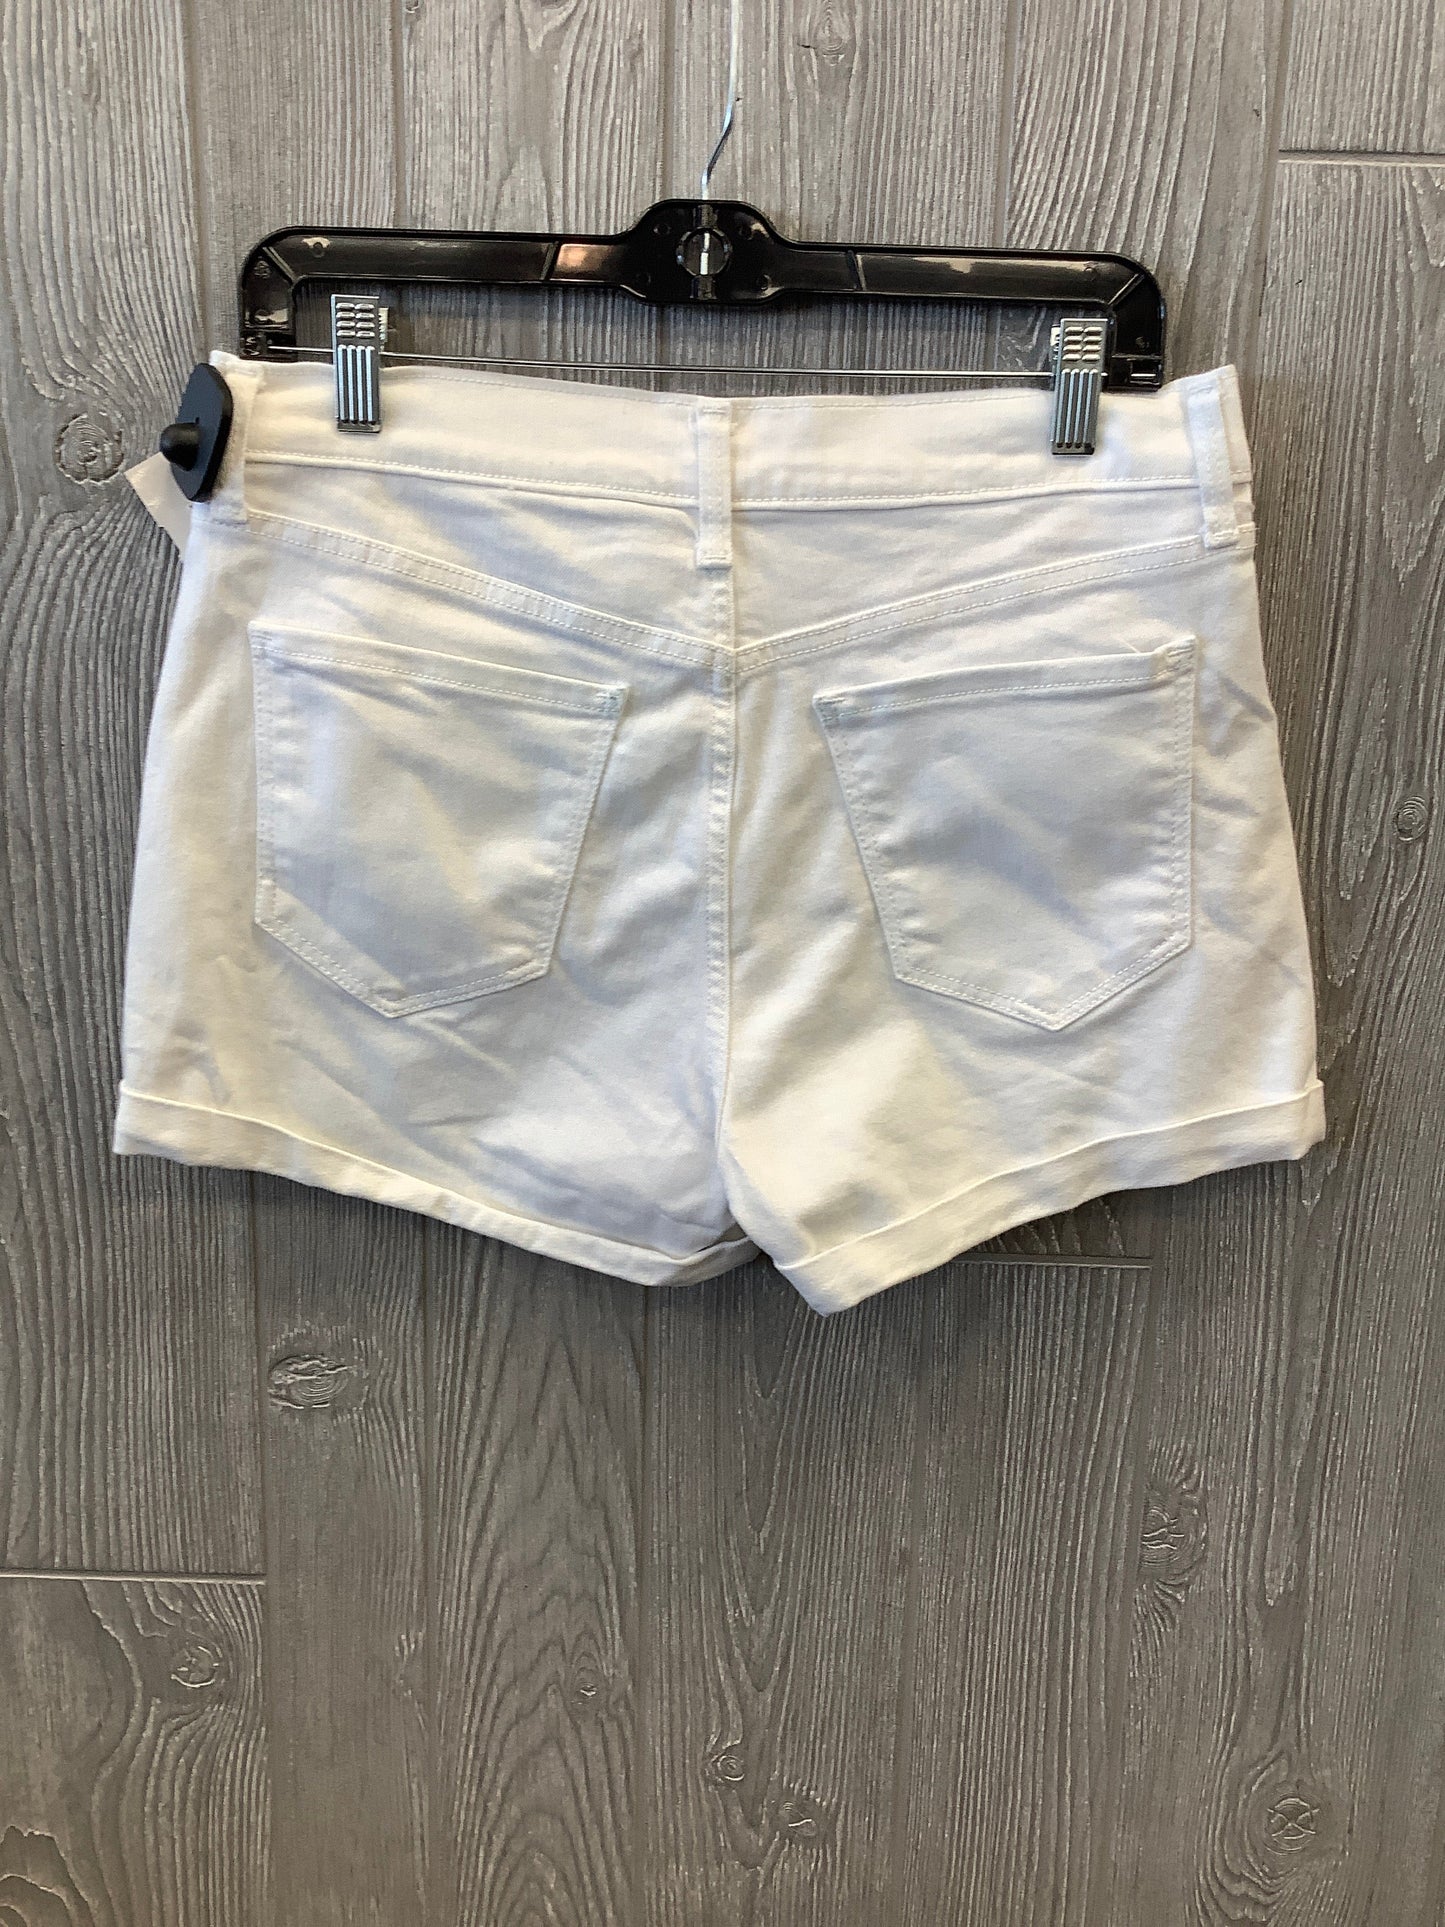 White Denim Shorts Old Navy, Size 8